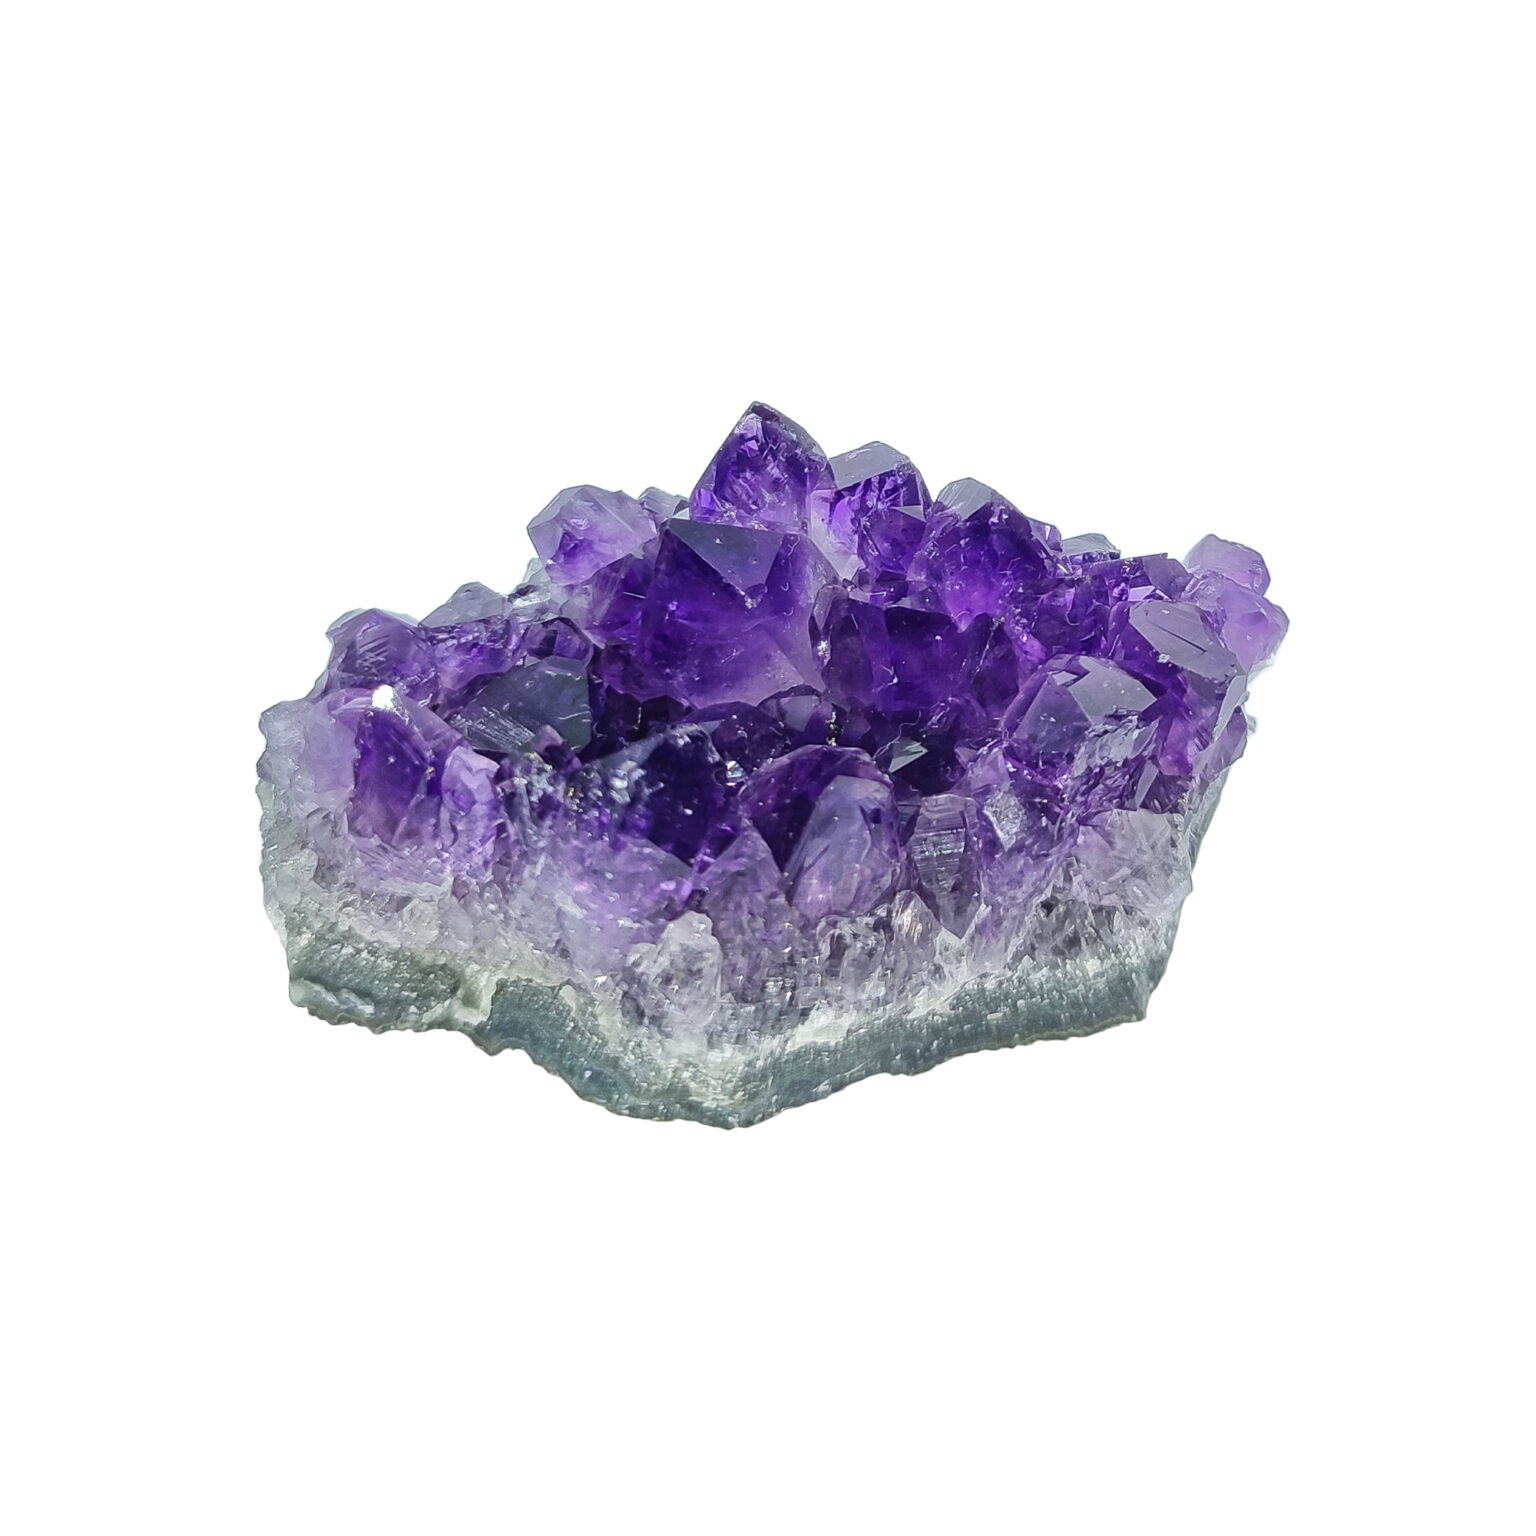 Amethyst Kristall-Stufe mit intensiv violetten Kristallen.